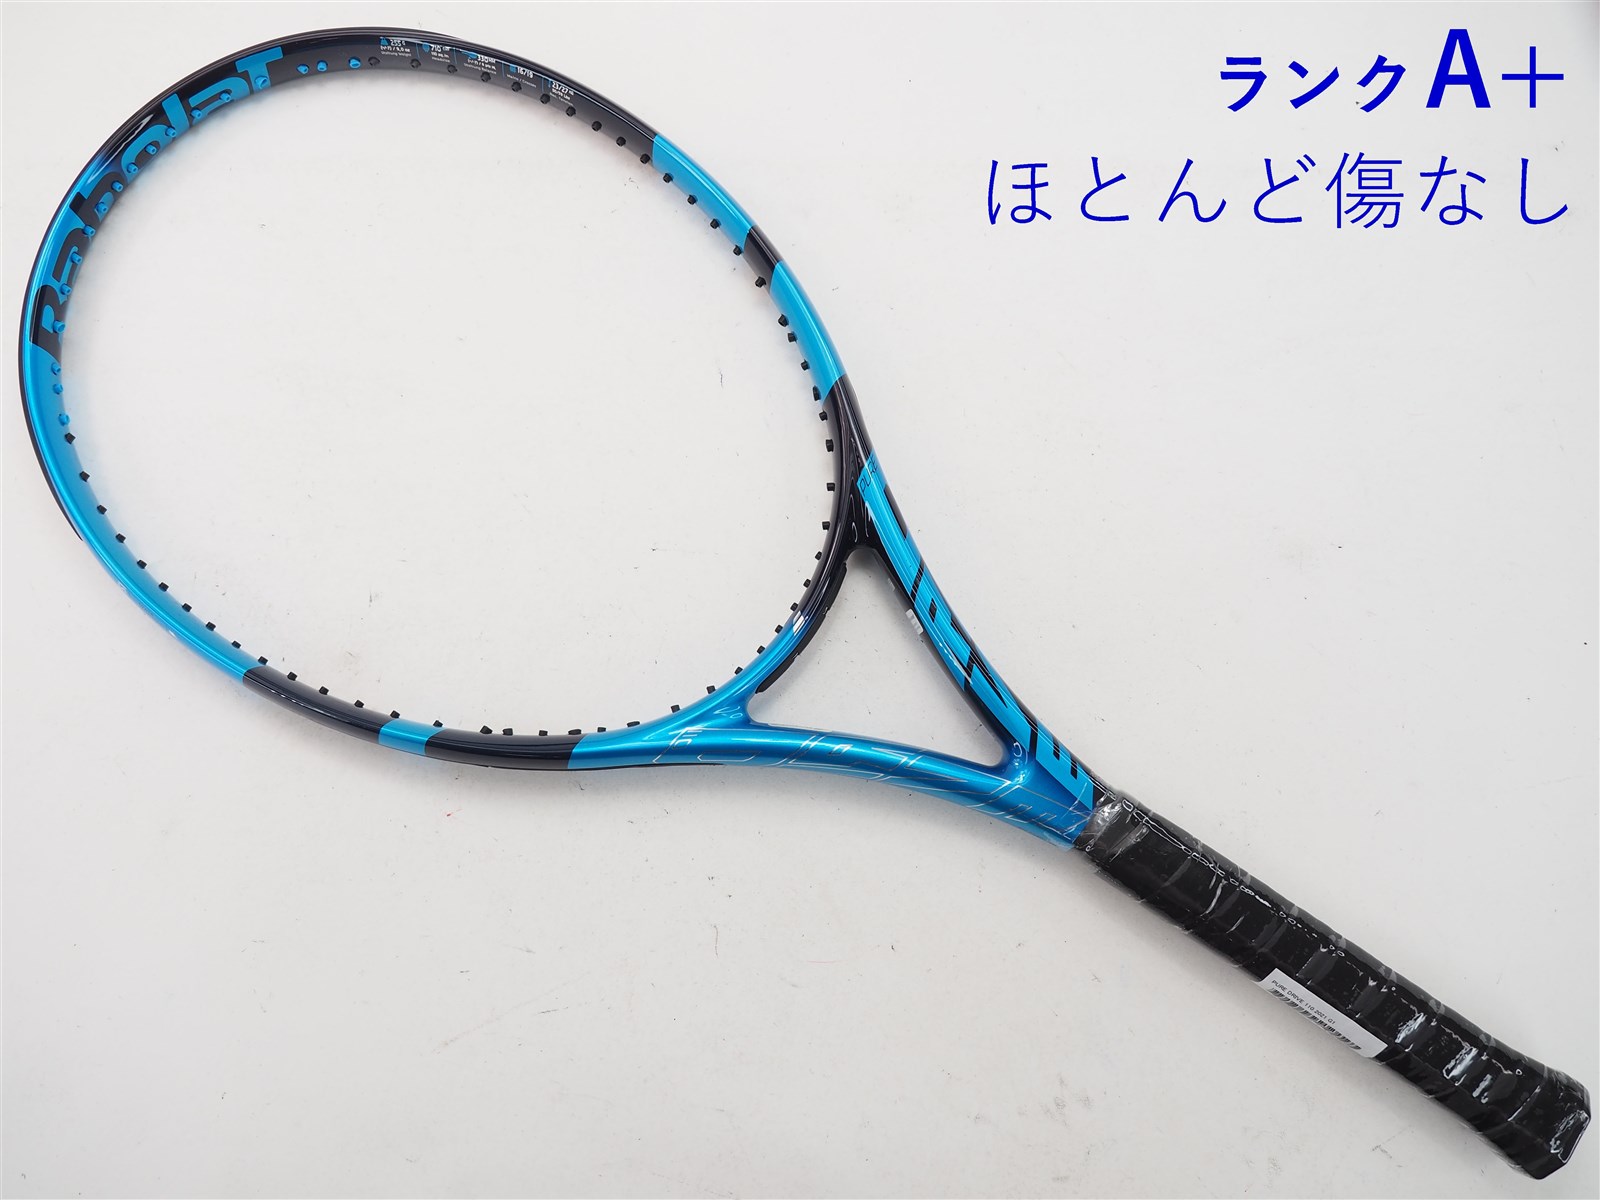 テニス【振動止＆ソフトケース付】バボラ ピュアドライブ 2021 G1